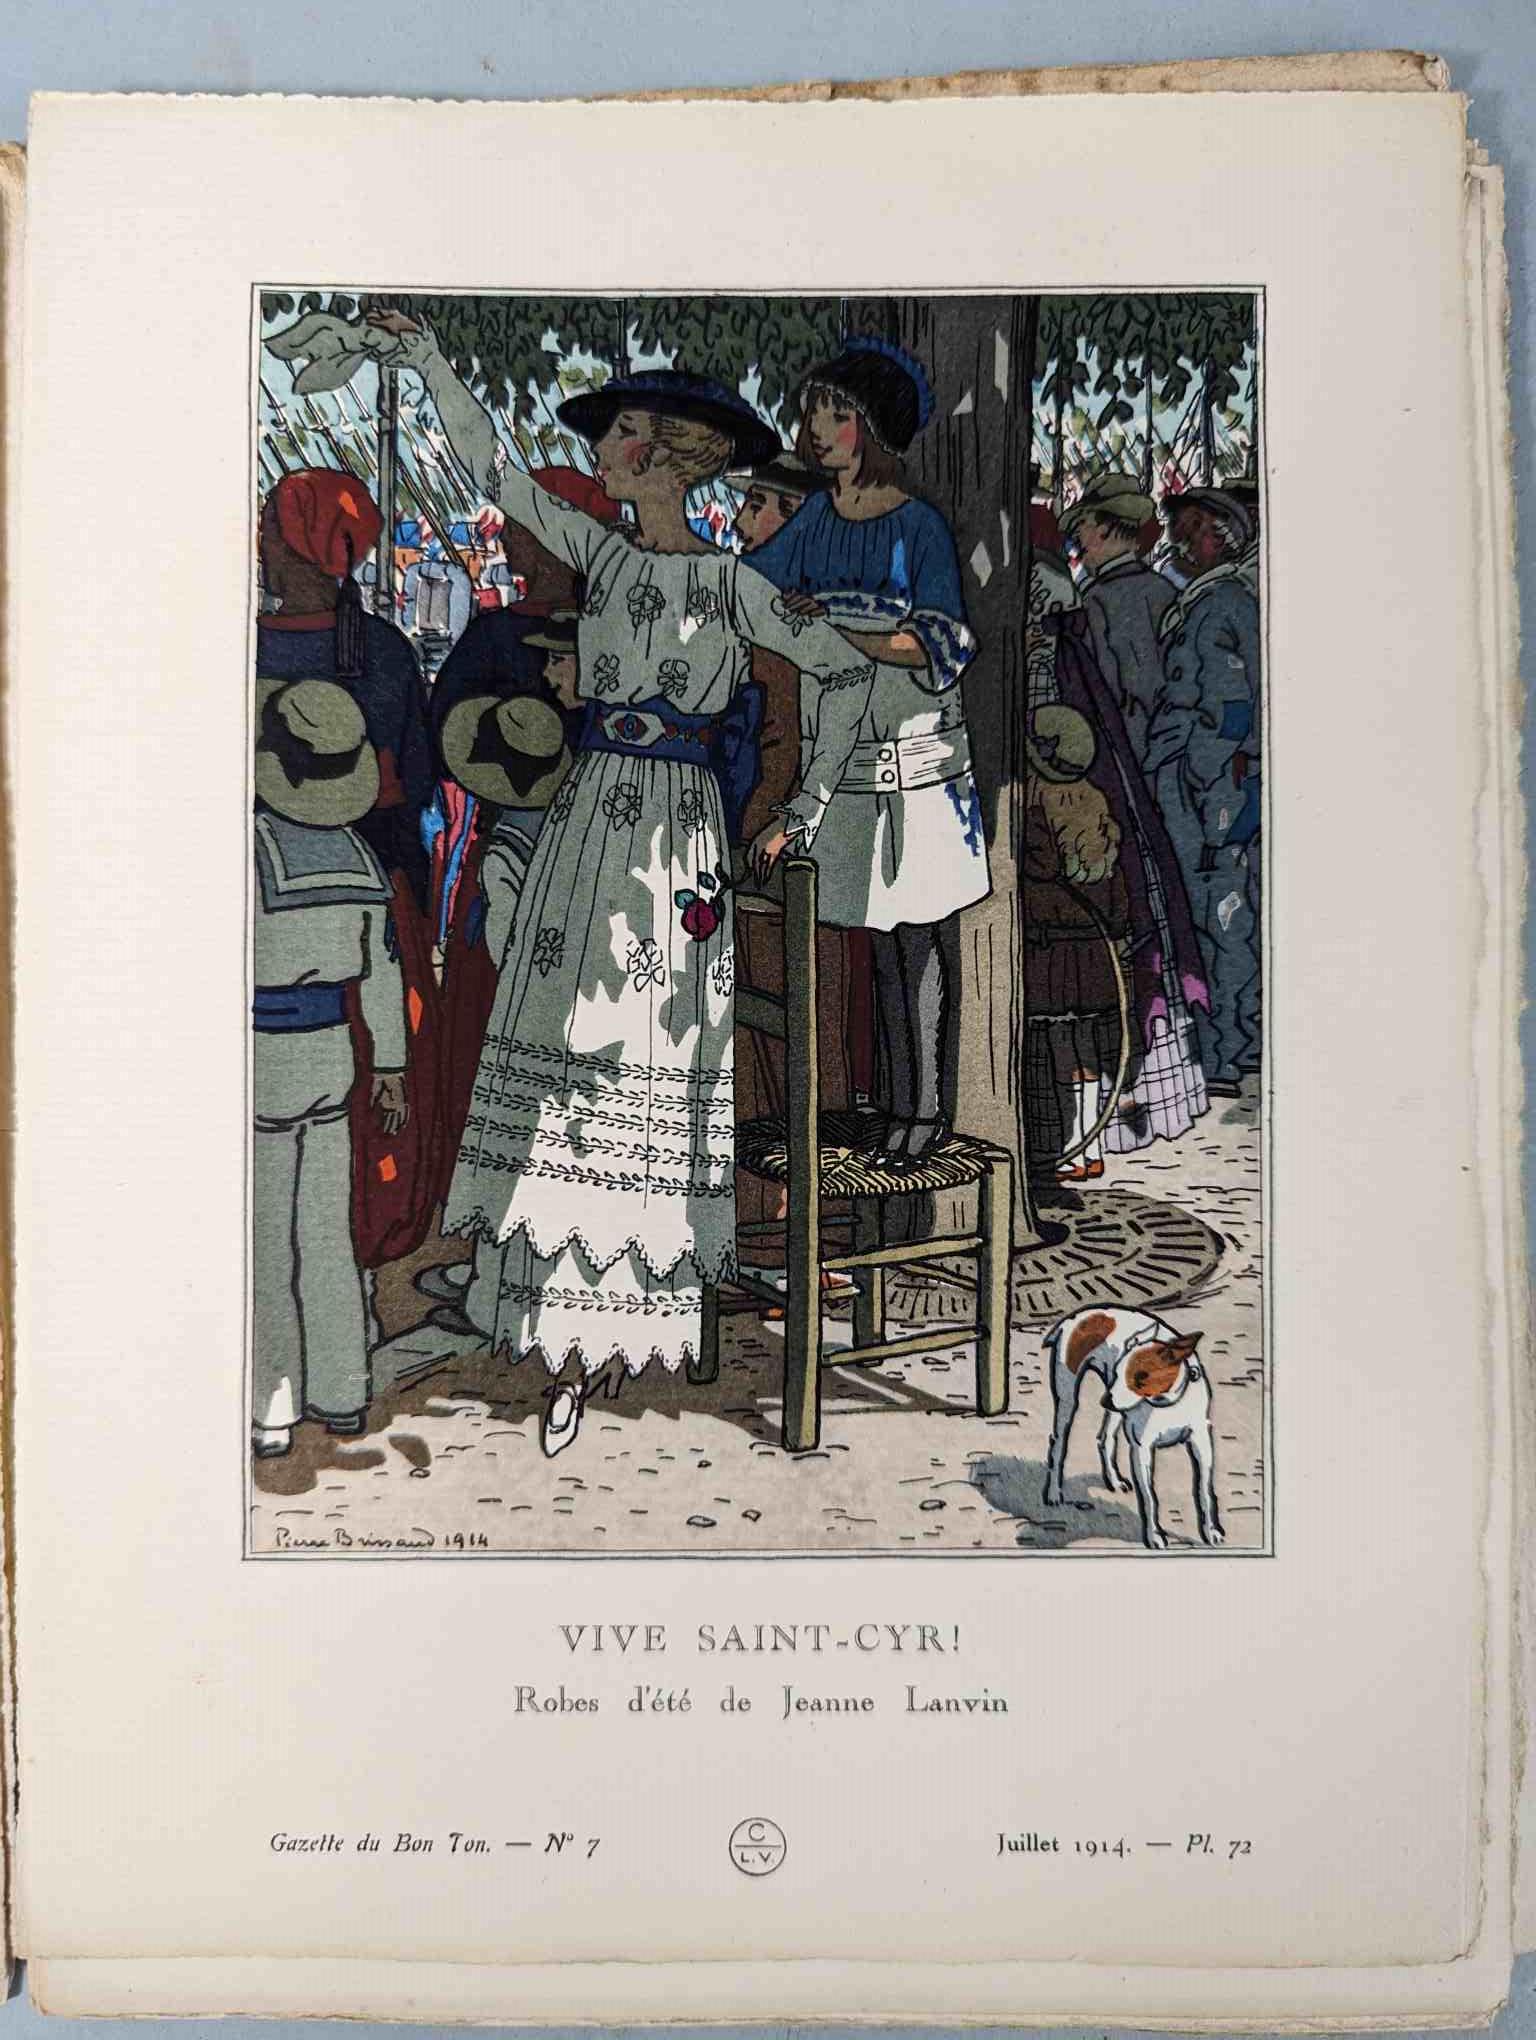 FASHION. VOGEL, Lucien. GAZETTE DU BON TON: Art-Modes & Frivolités, Paris 1913-14, 4 vol. - Image 47 of 54